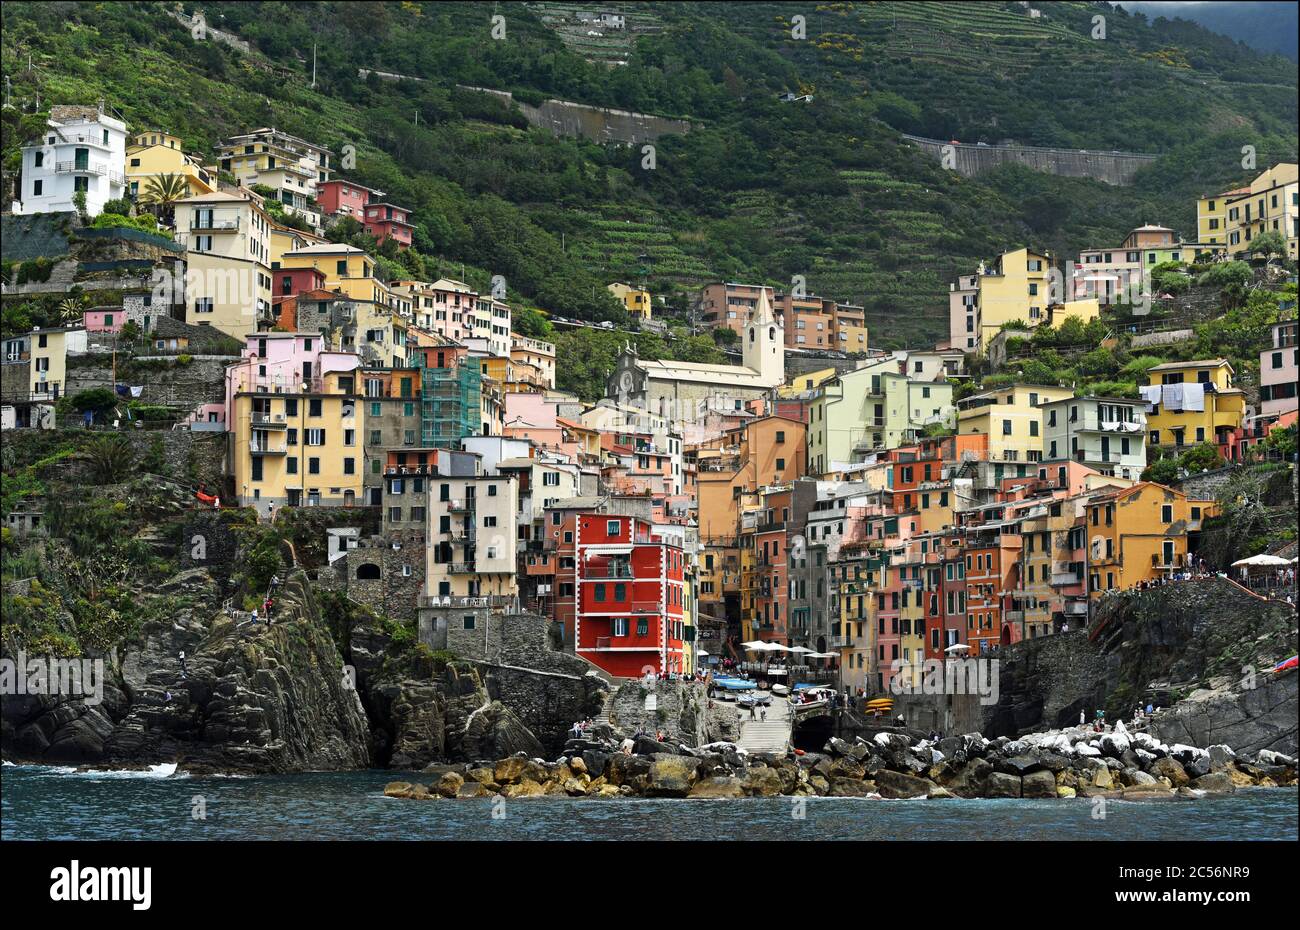 Europe, Italy, Liguria, Cinque Terre, Riomaggiore, colorful houses Stock Photo